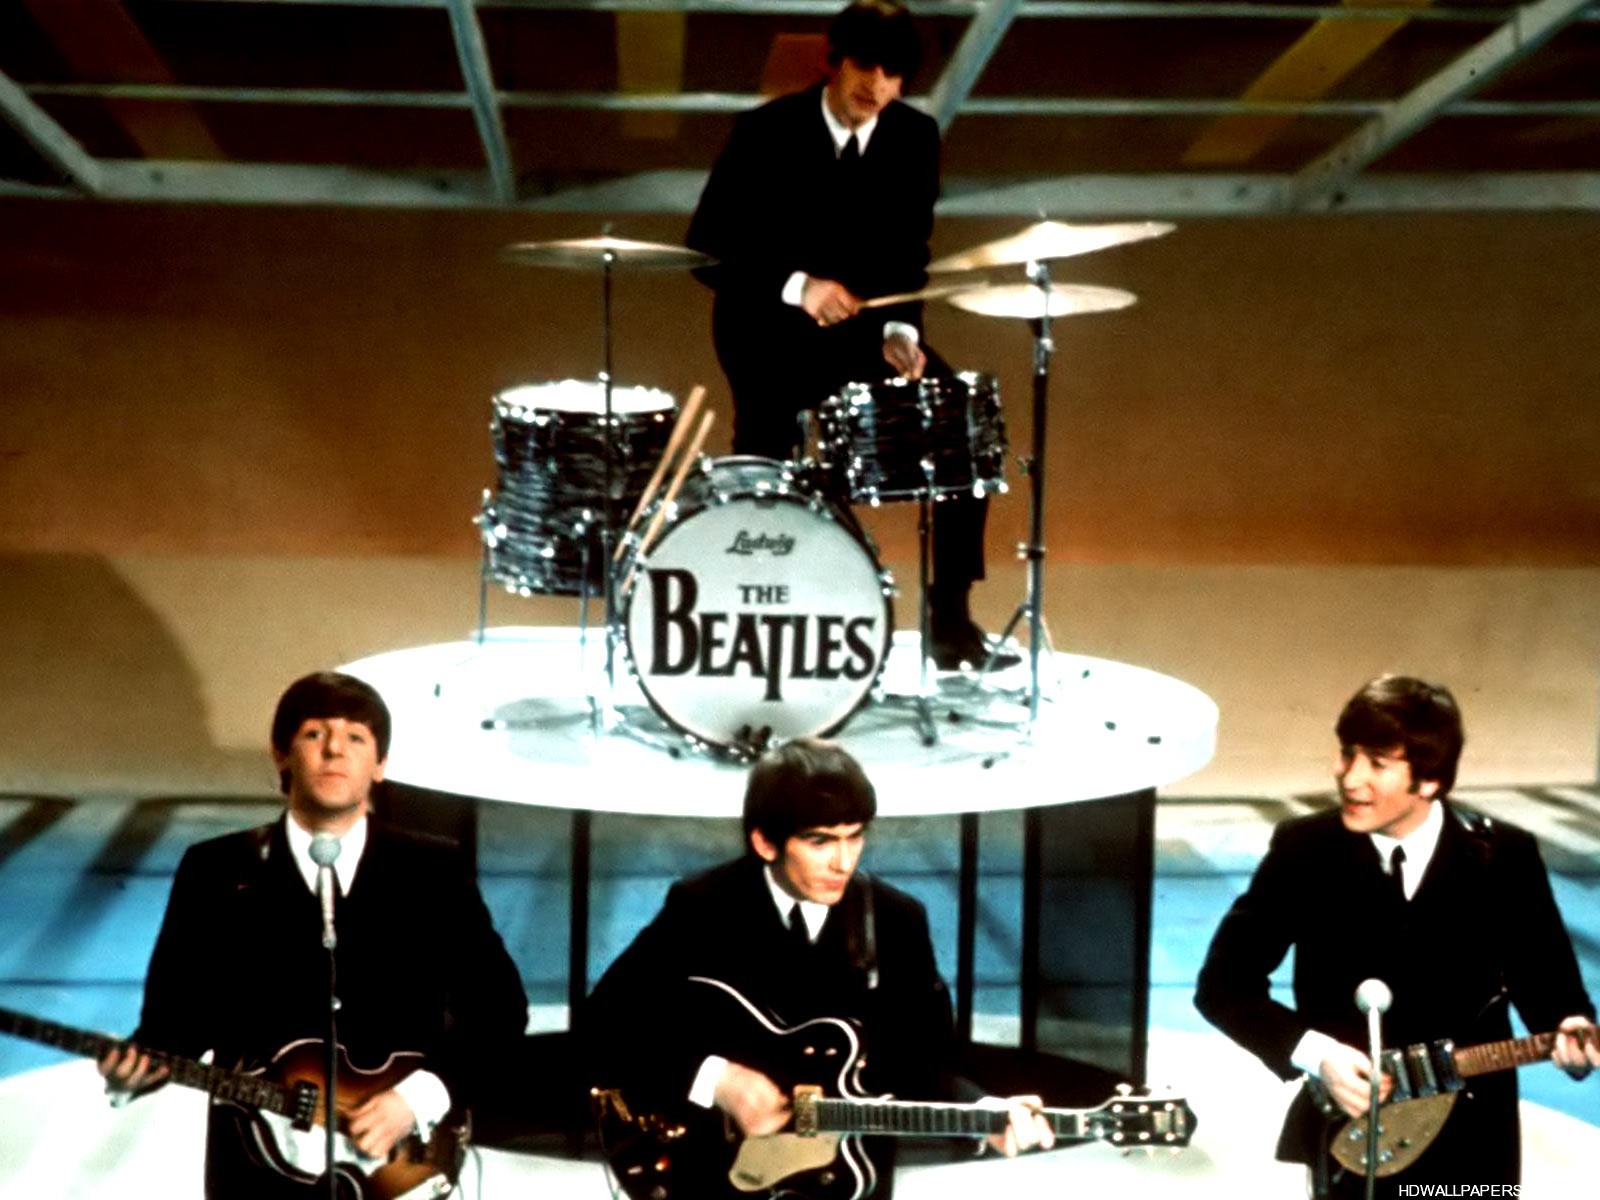 The Beatles Bliss: 4 Legends, 1 Final Song